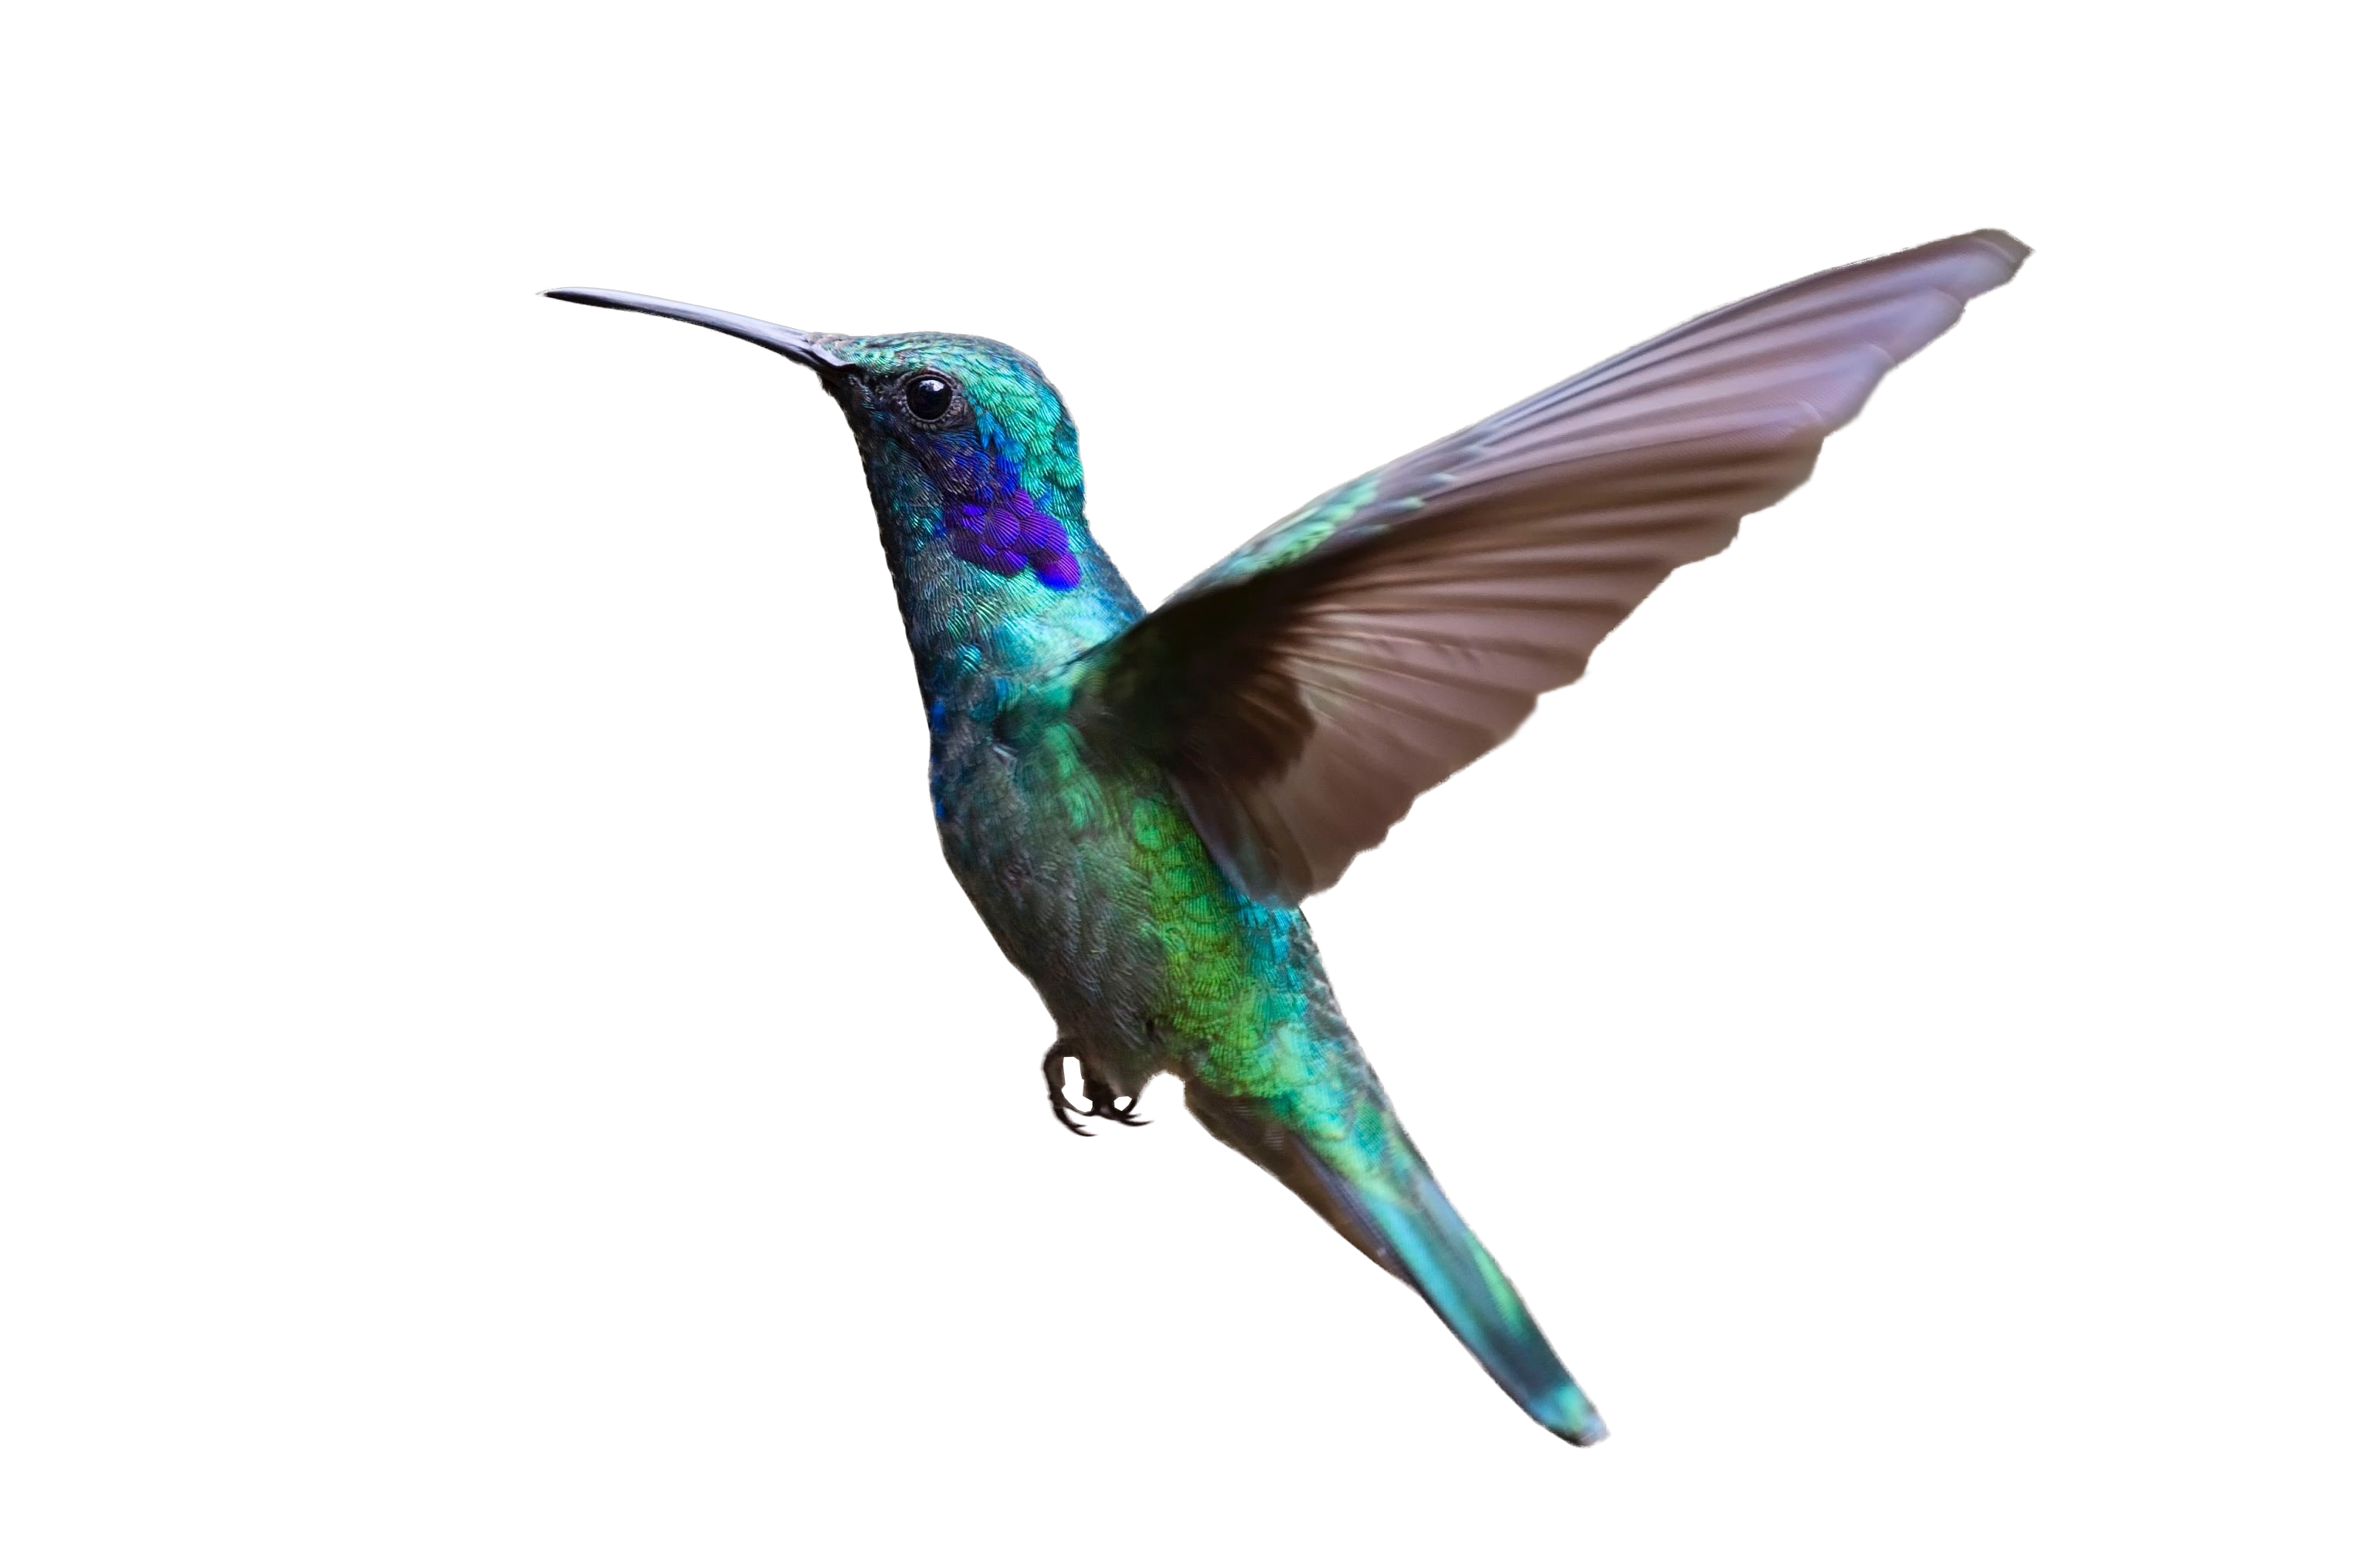 Hummingbird bird flight.